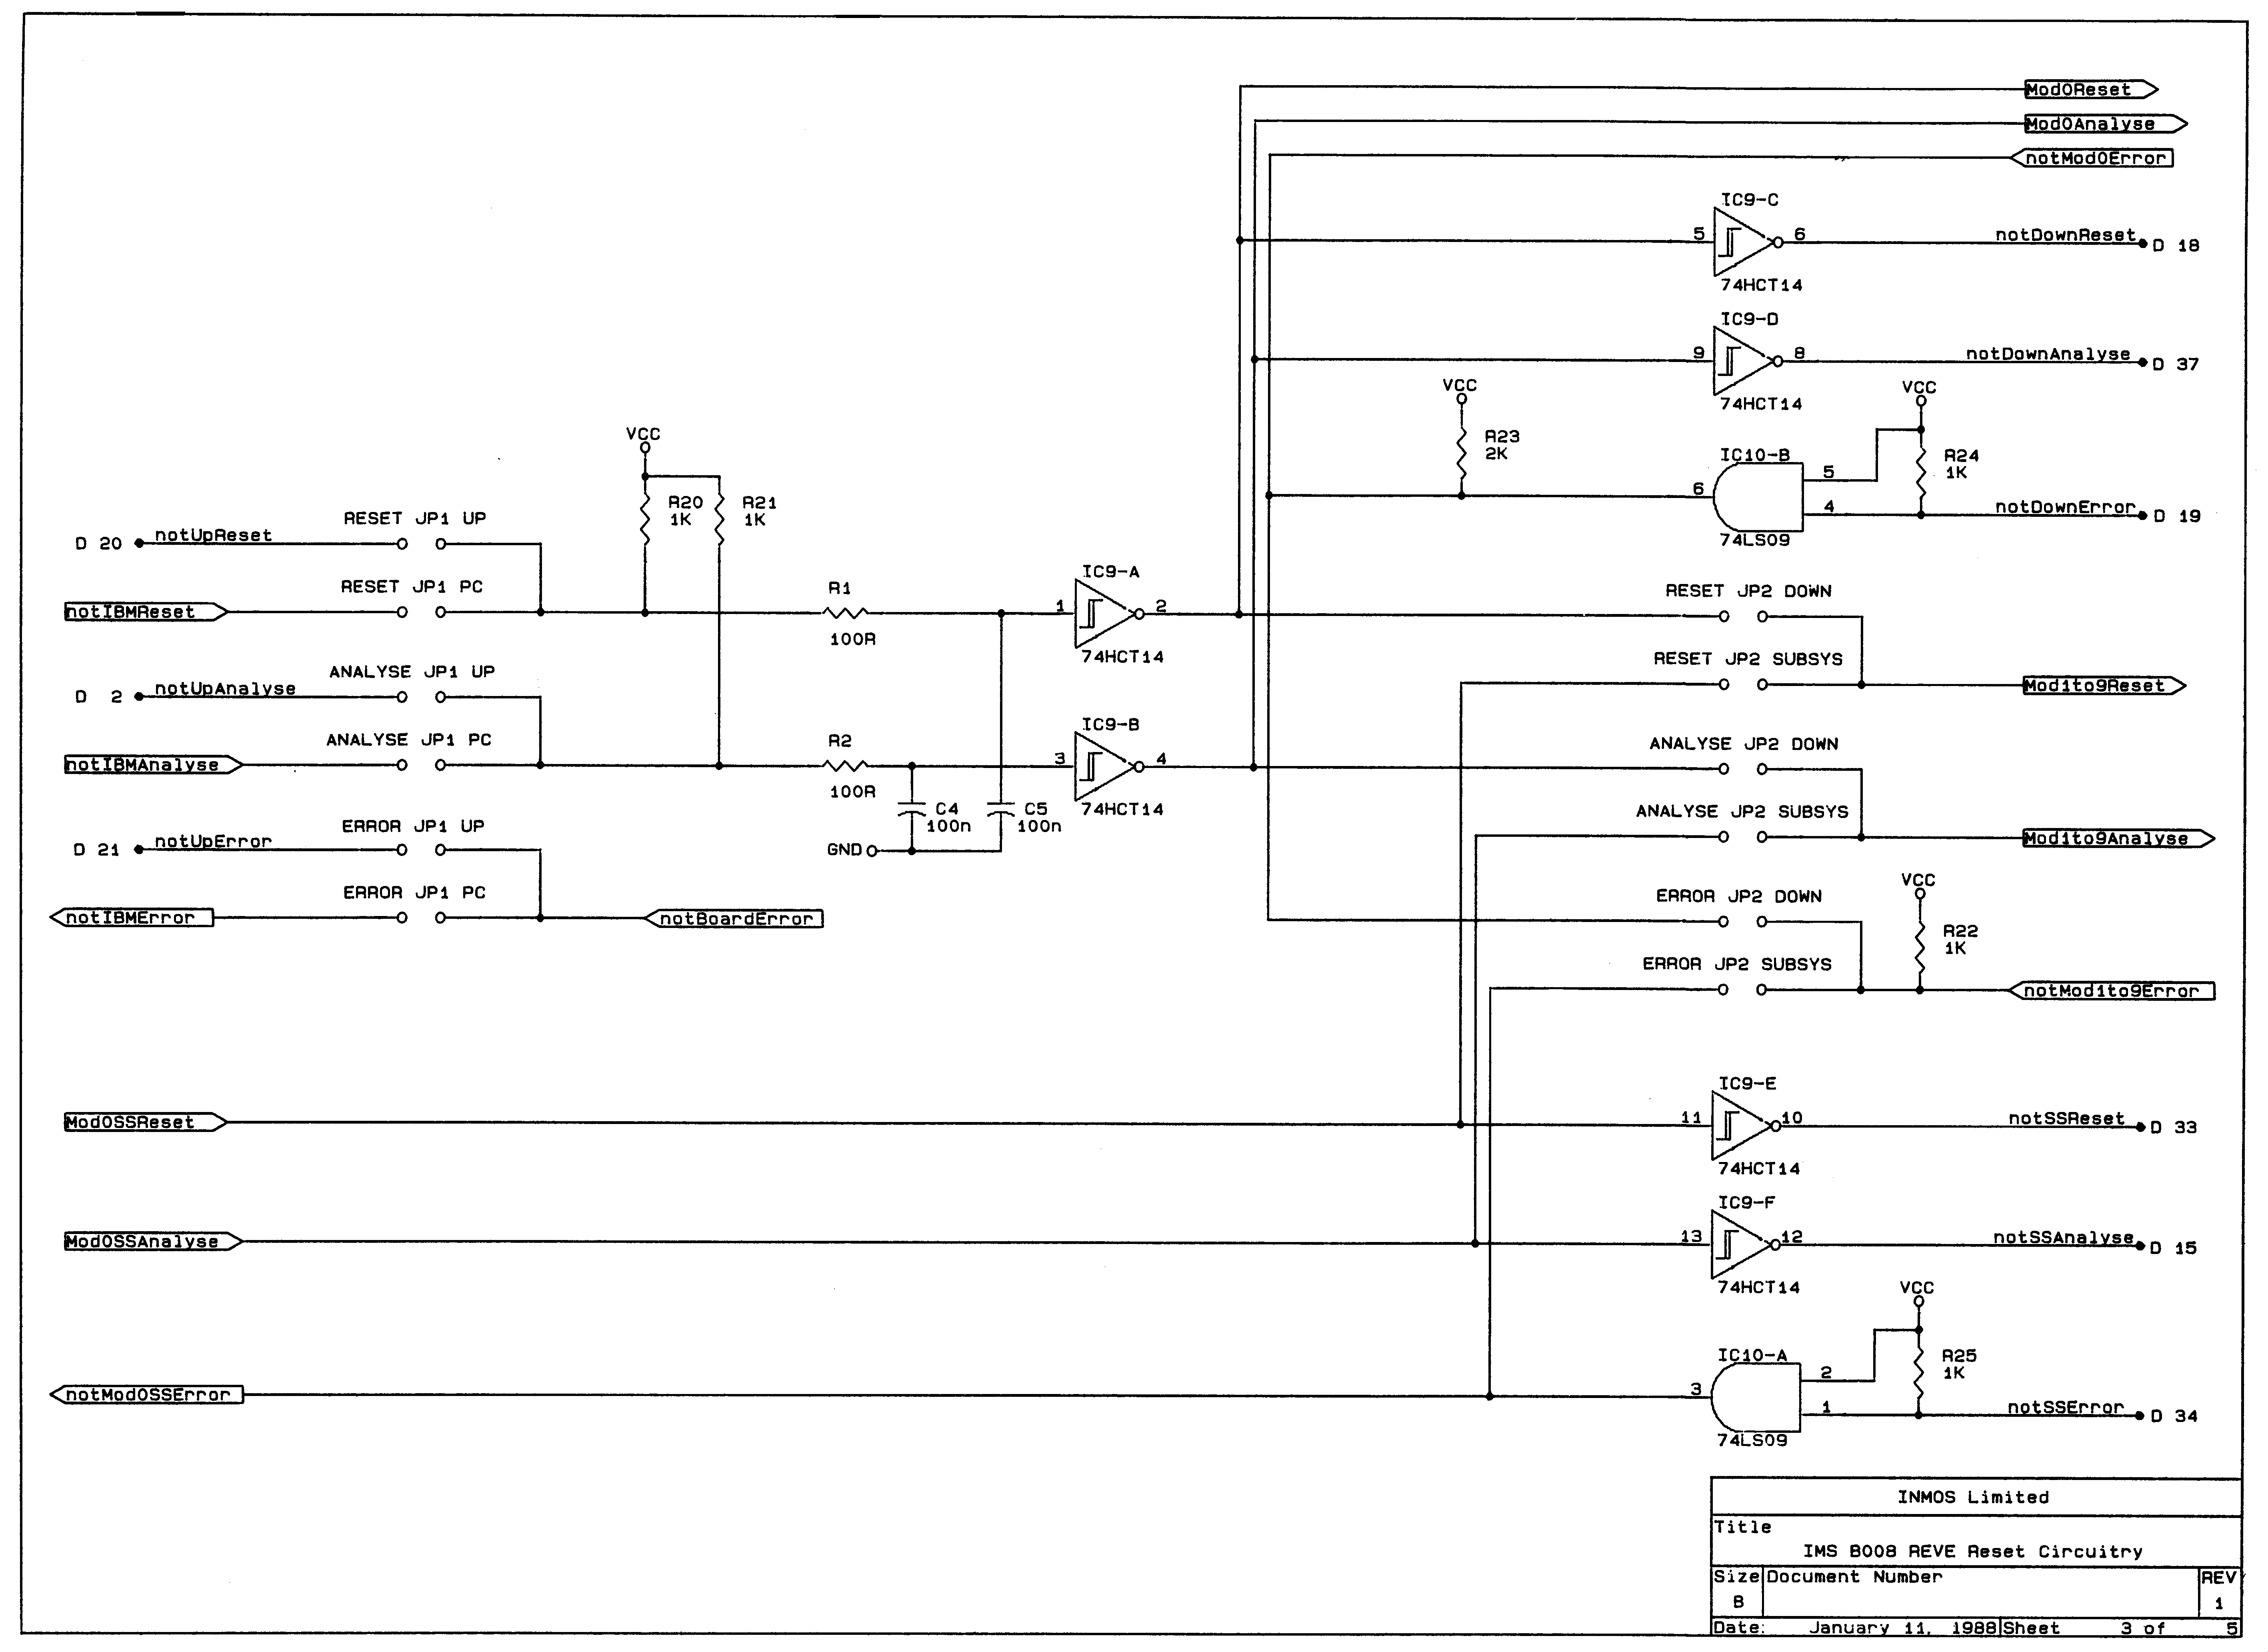 Circuit Diagram 3 of 5